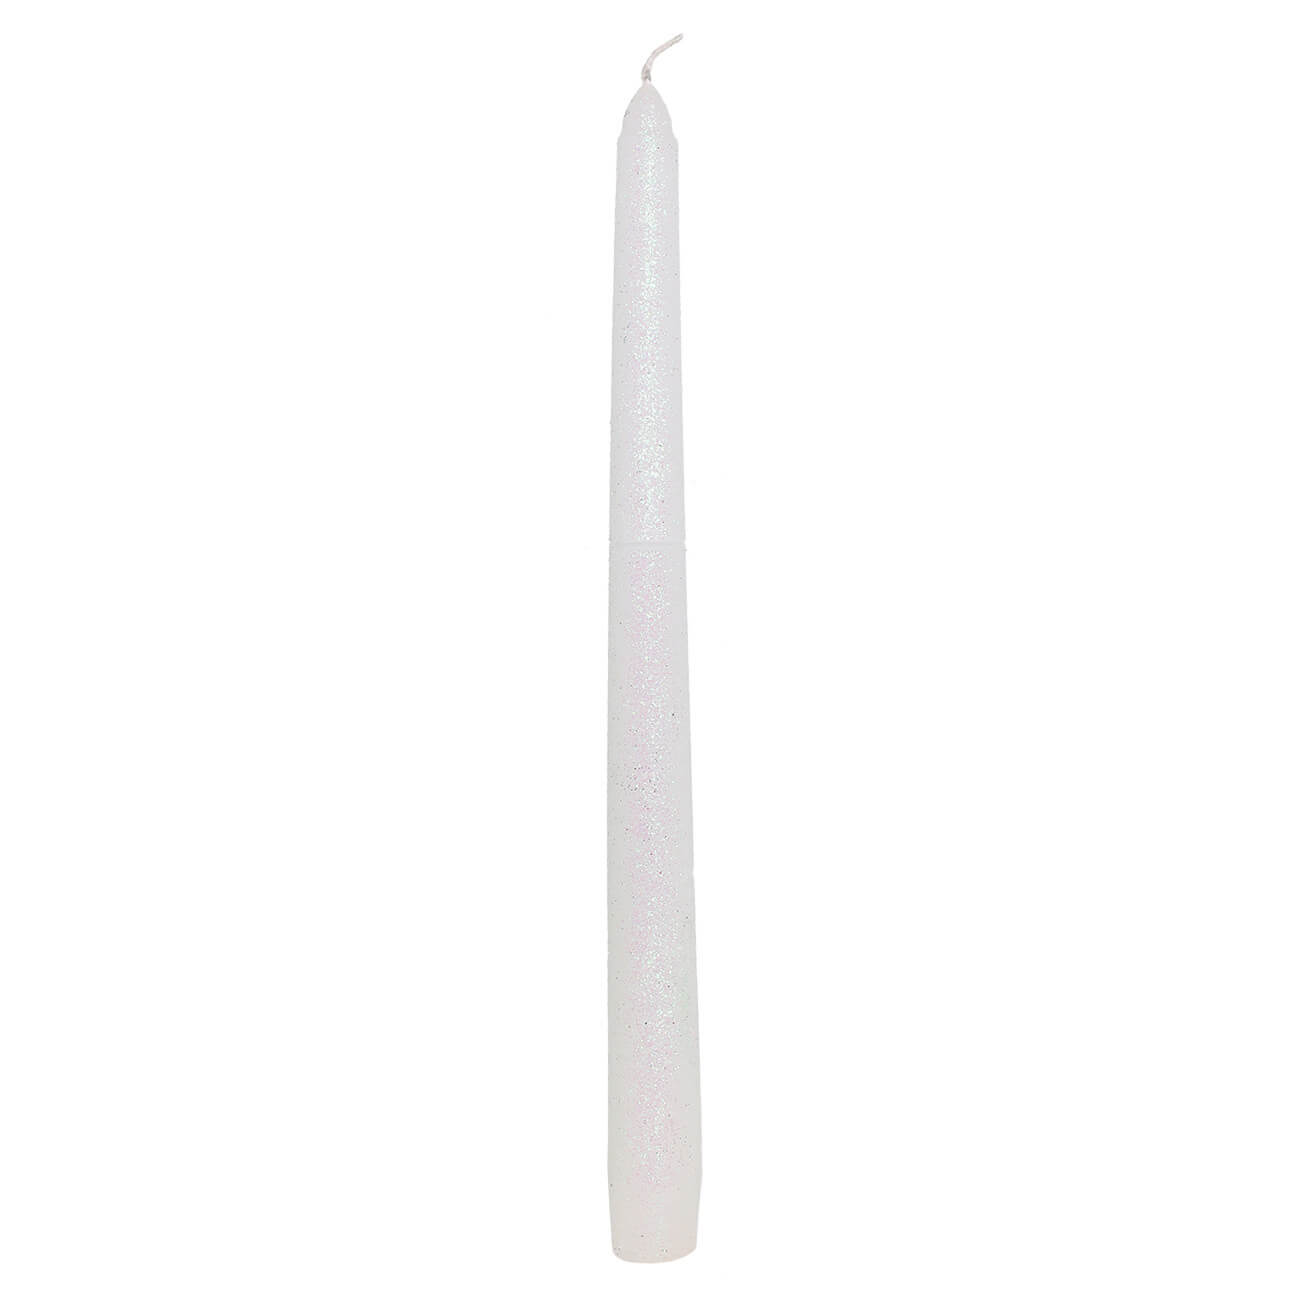 Свеча, 25 см, тонкая, белая, Metallic glow свеча 12 см цилиндрическая с блестками серебристая metallic glow